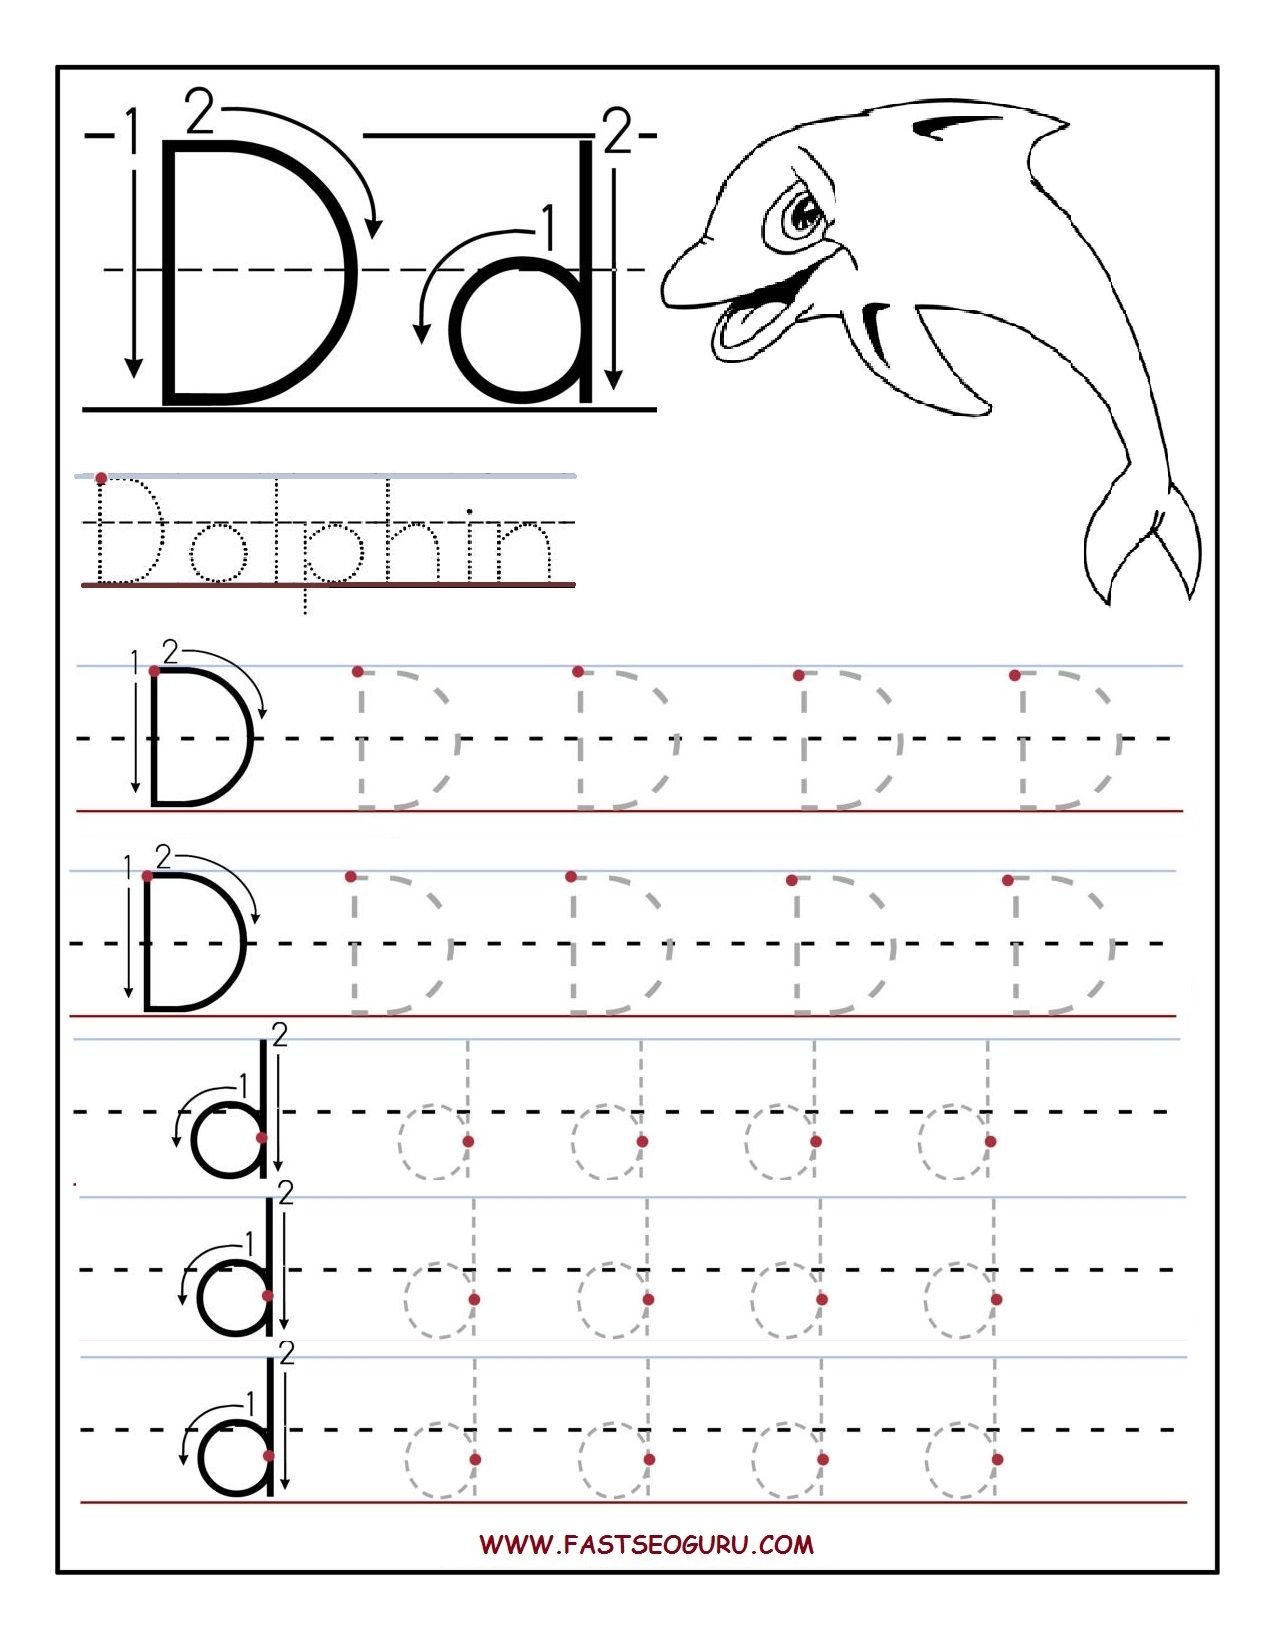 Preschool Alphabet Worksheets Printables Printable Letter A inside Tracing Letter Dd Worksheet